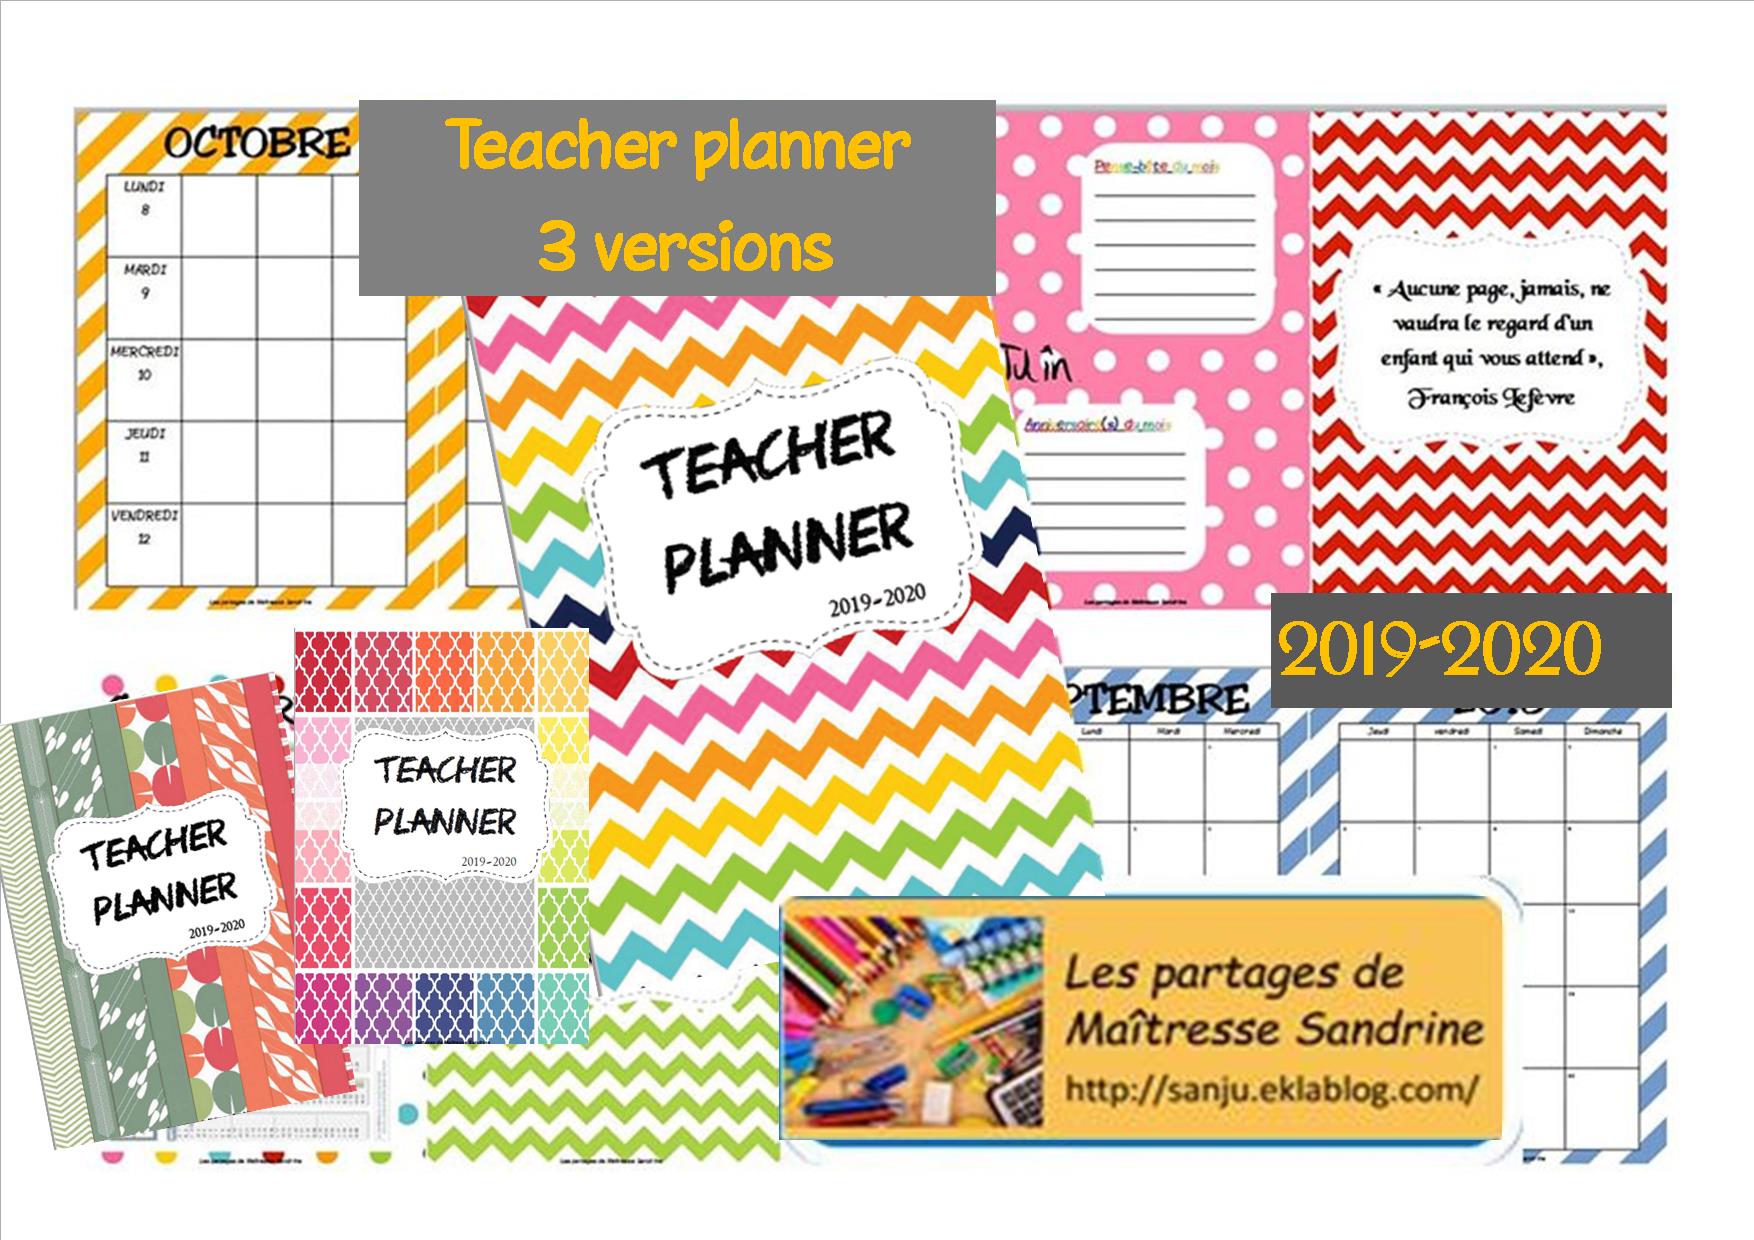 Teacher planner 2019-2020 - Les partages de Maîtresse Sandrine